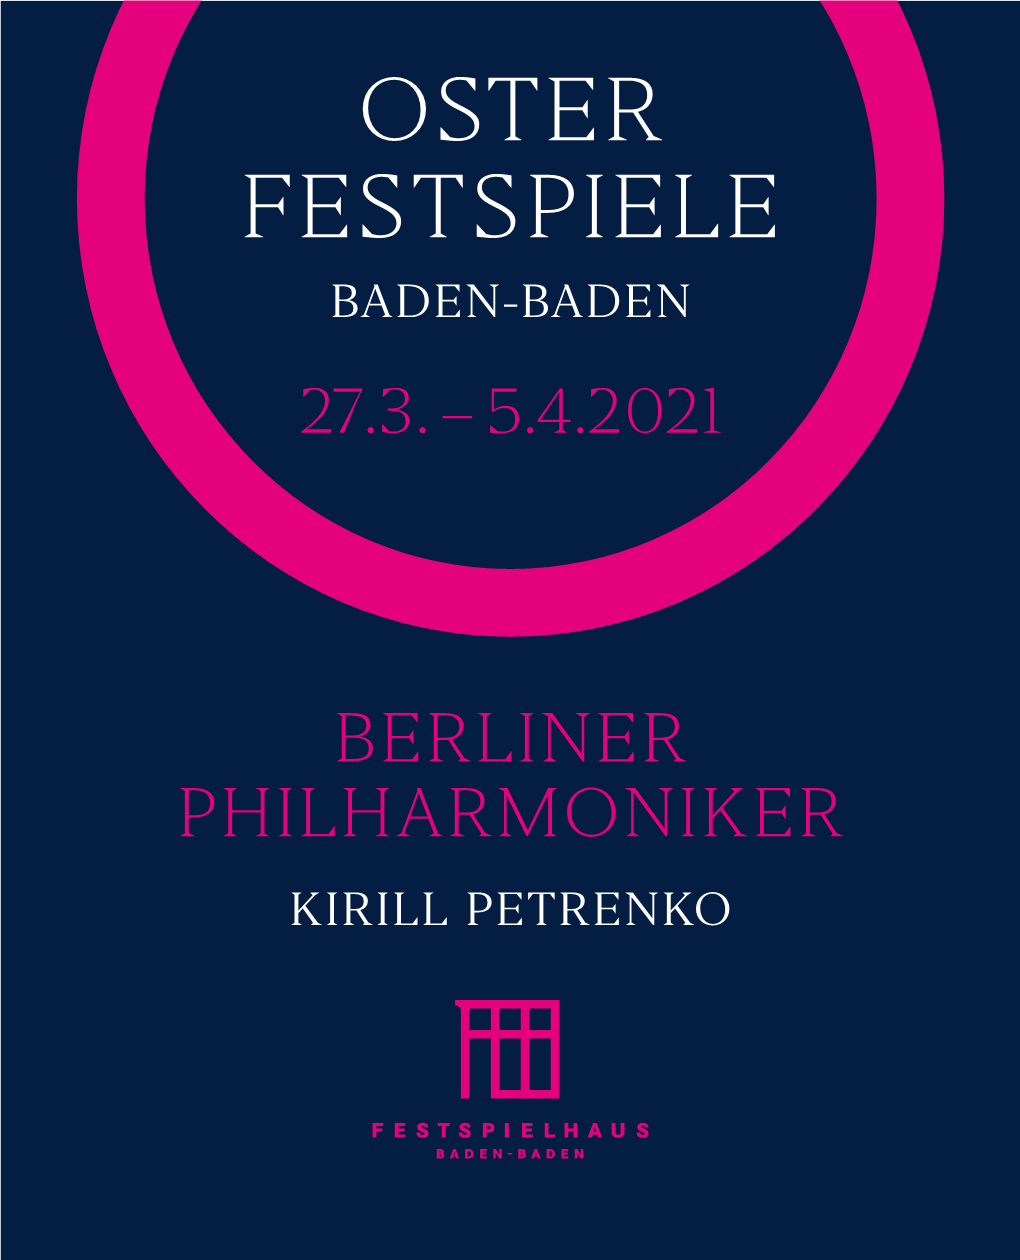 Oster Festspiele Baden-Baden